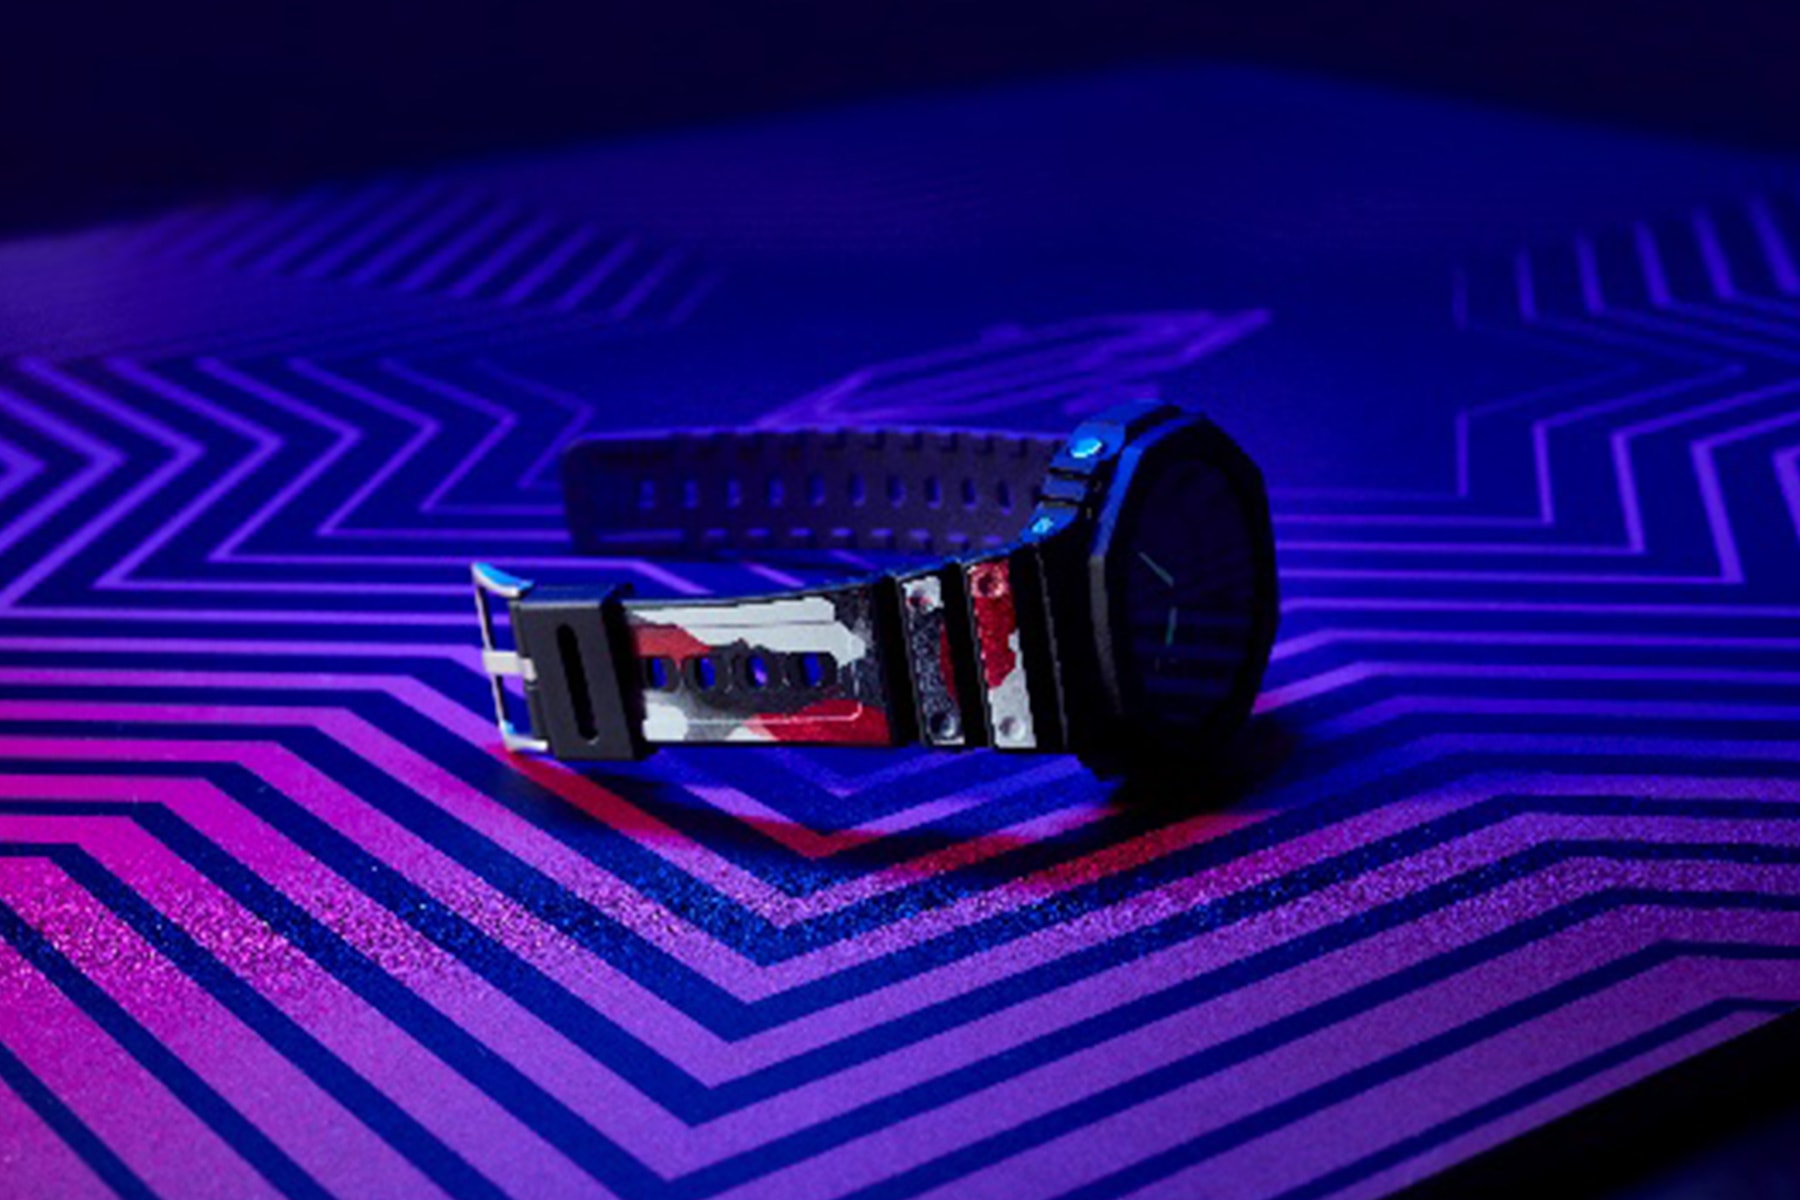 G-Shock 攜手台灣塗鴉藝術家 DEBE 打造聯名錶款與展覽